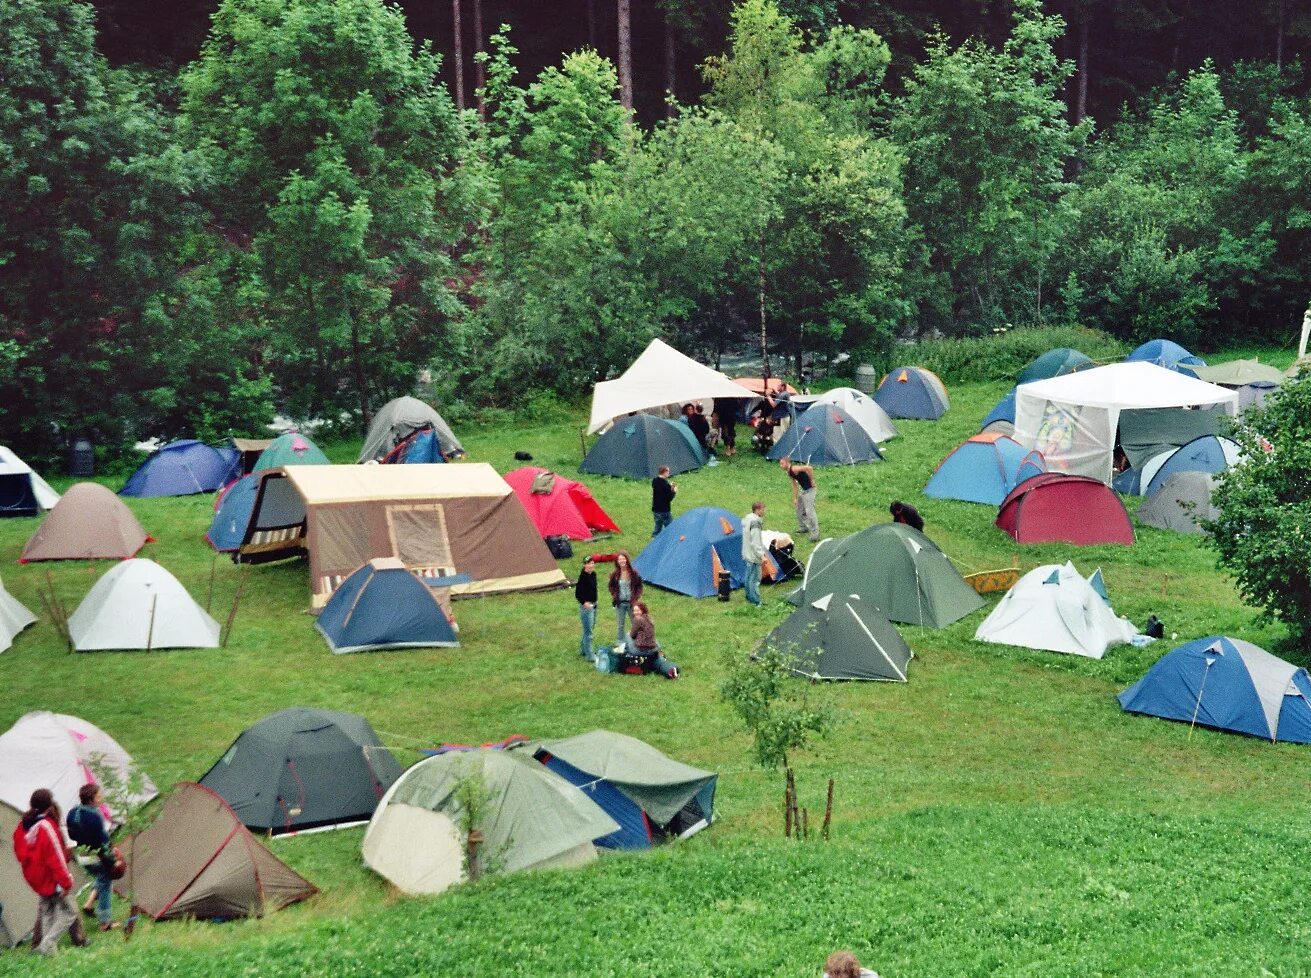 Www camping. Палаточный лагерь Camp 2050. Палаточный лагерь Висимские Поляны. Палаточный кемпинг Висимские Поляны. Глэмпинг палаточный лагерь.